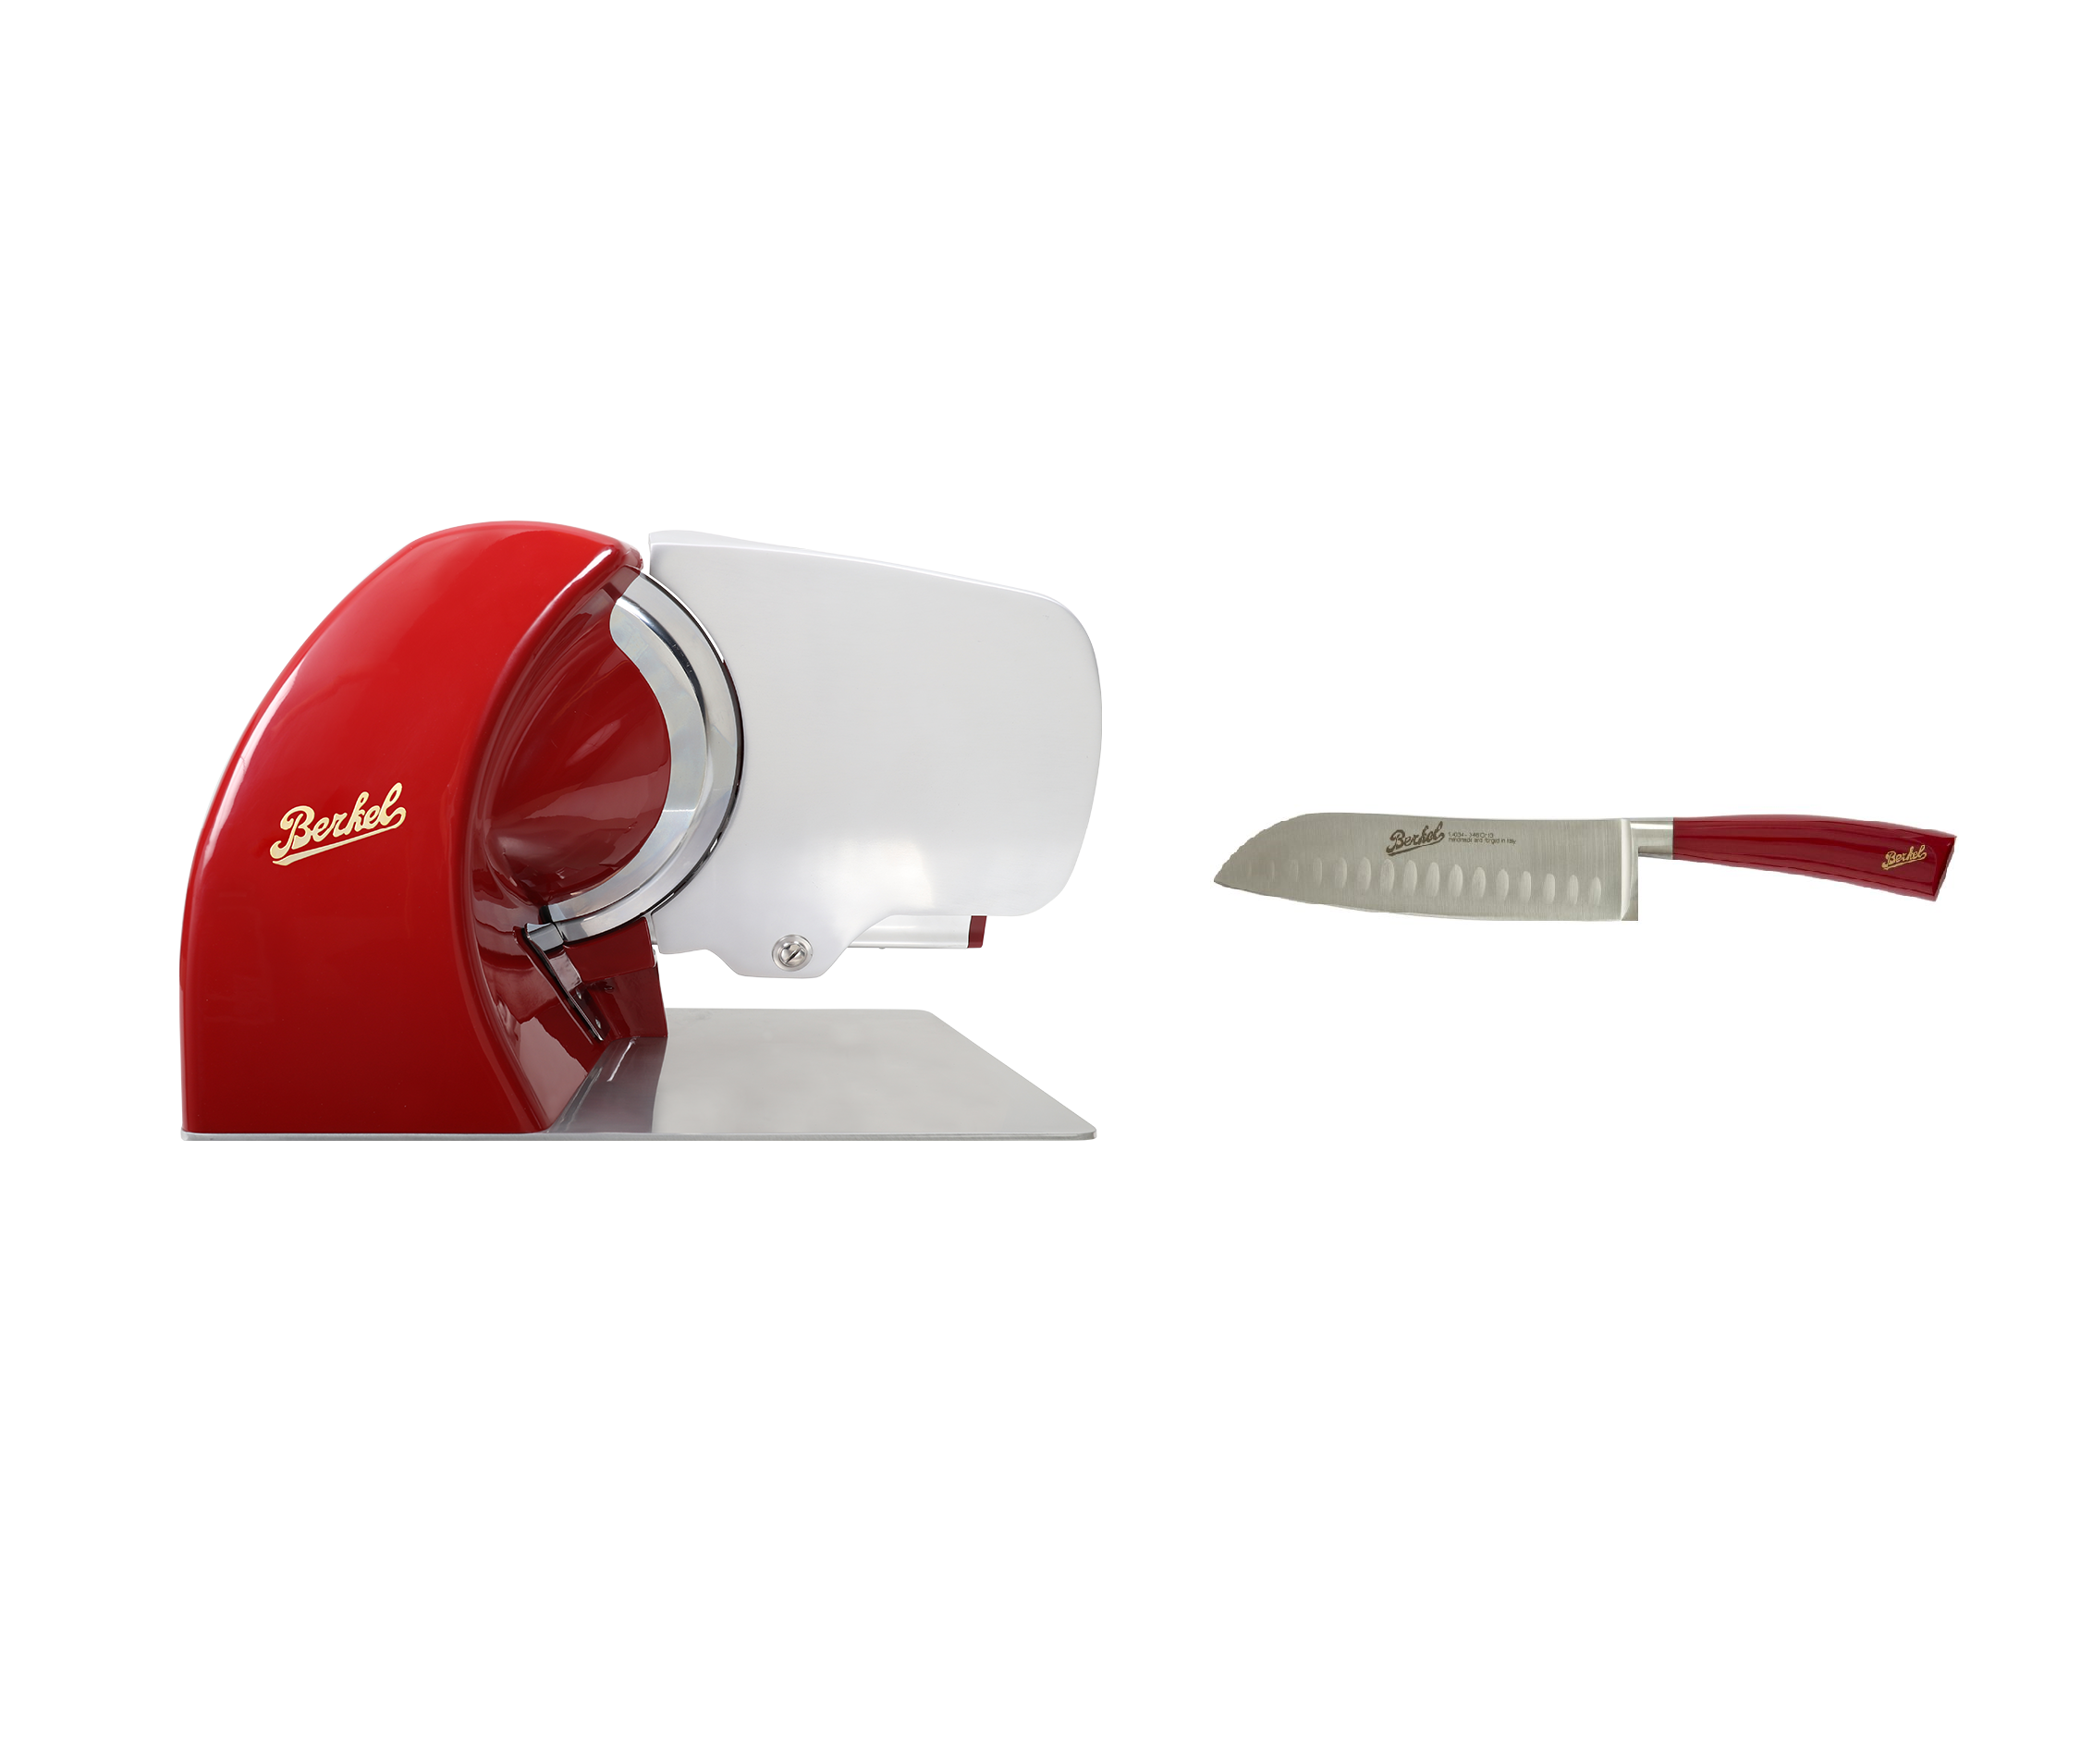 Berkel Slicer Home Line 250 + Santoku Elegance Red Knife